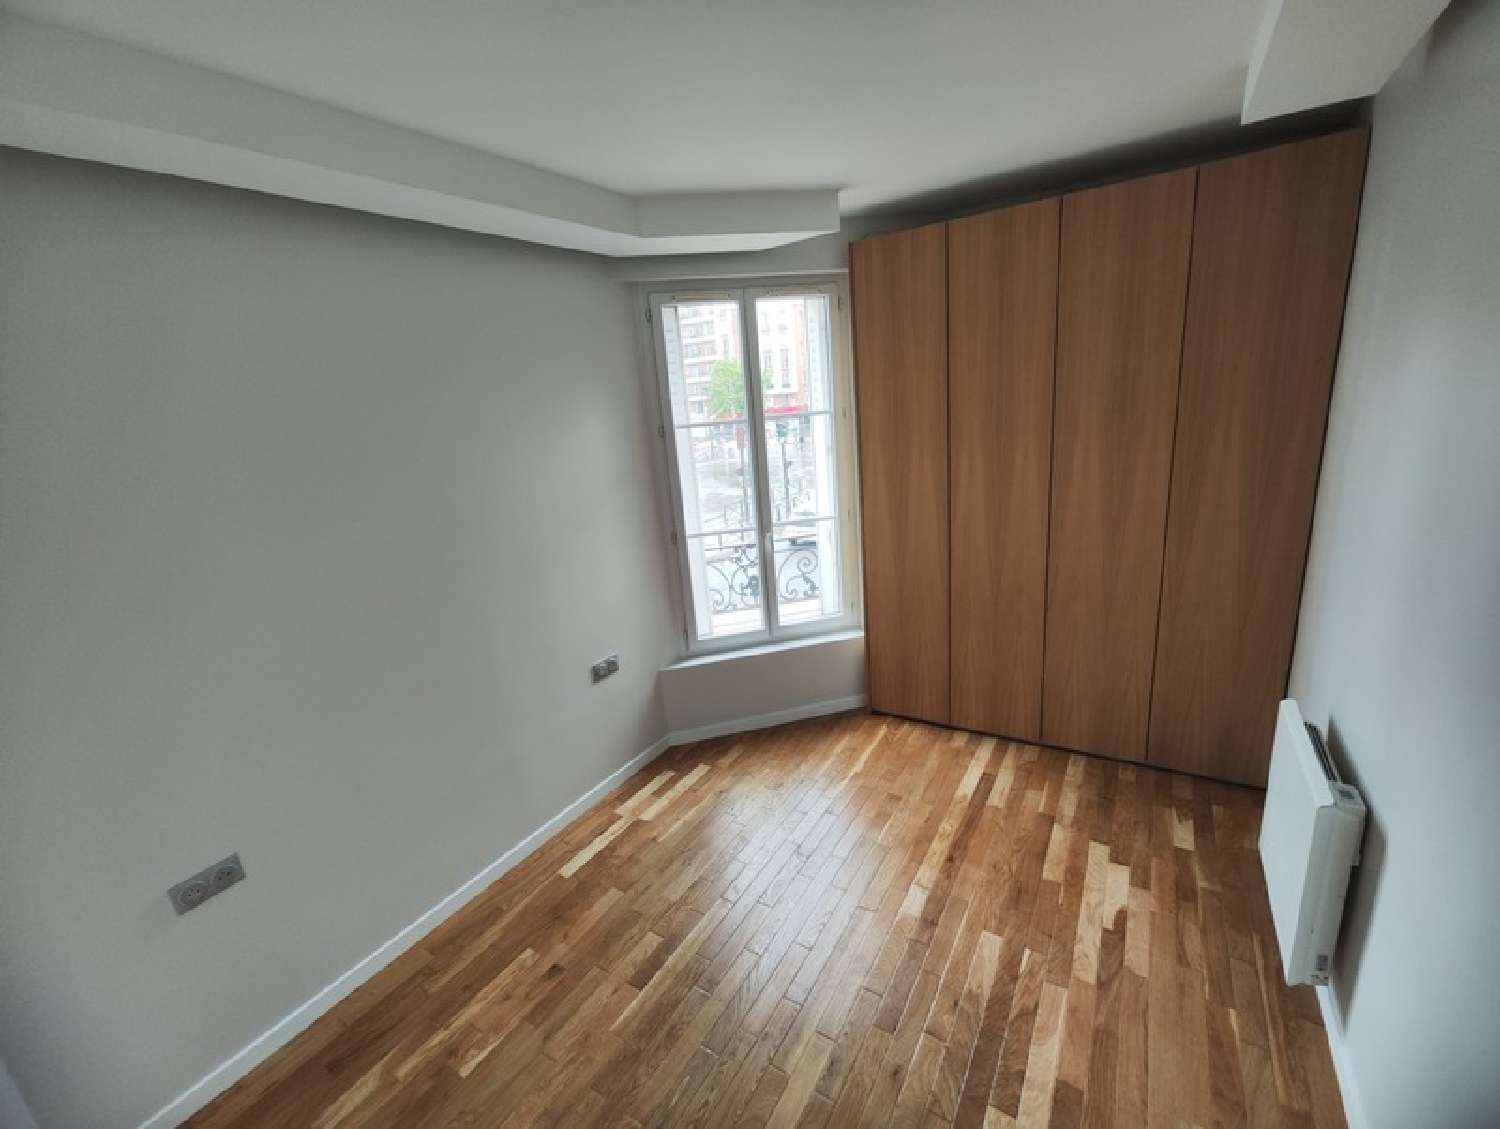  kaufen Wohnung/ Apartment Paris 12e Arrondissement Paris (Seine) 7